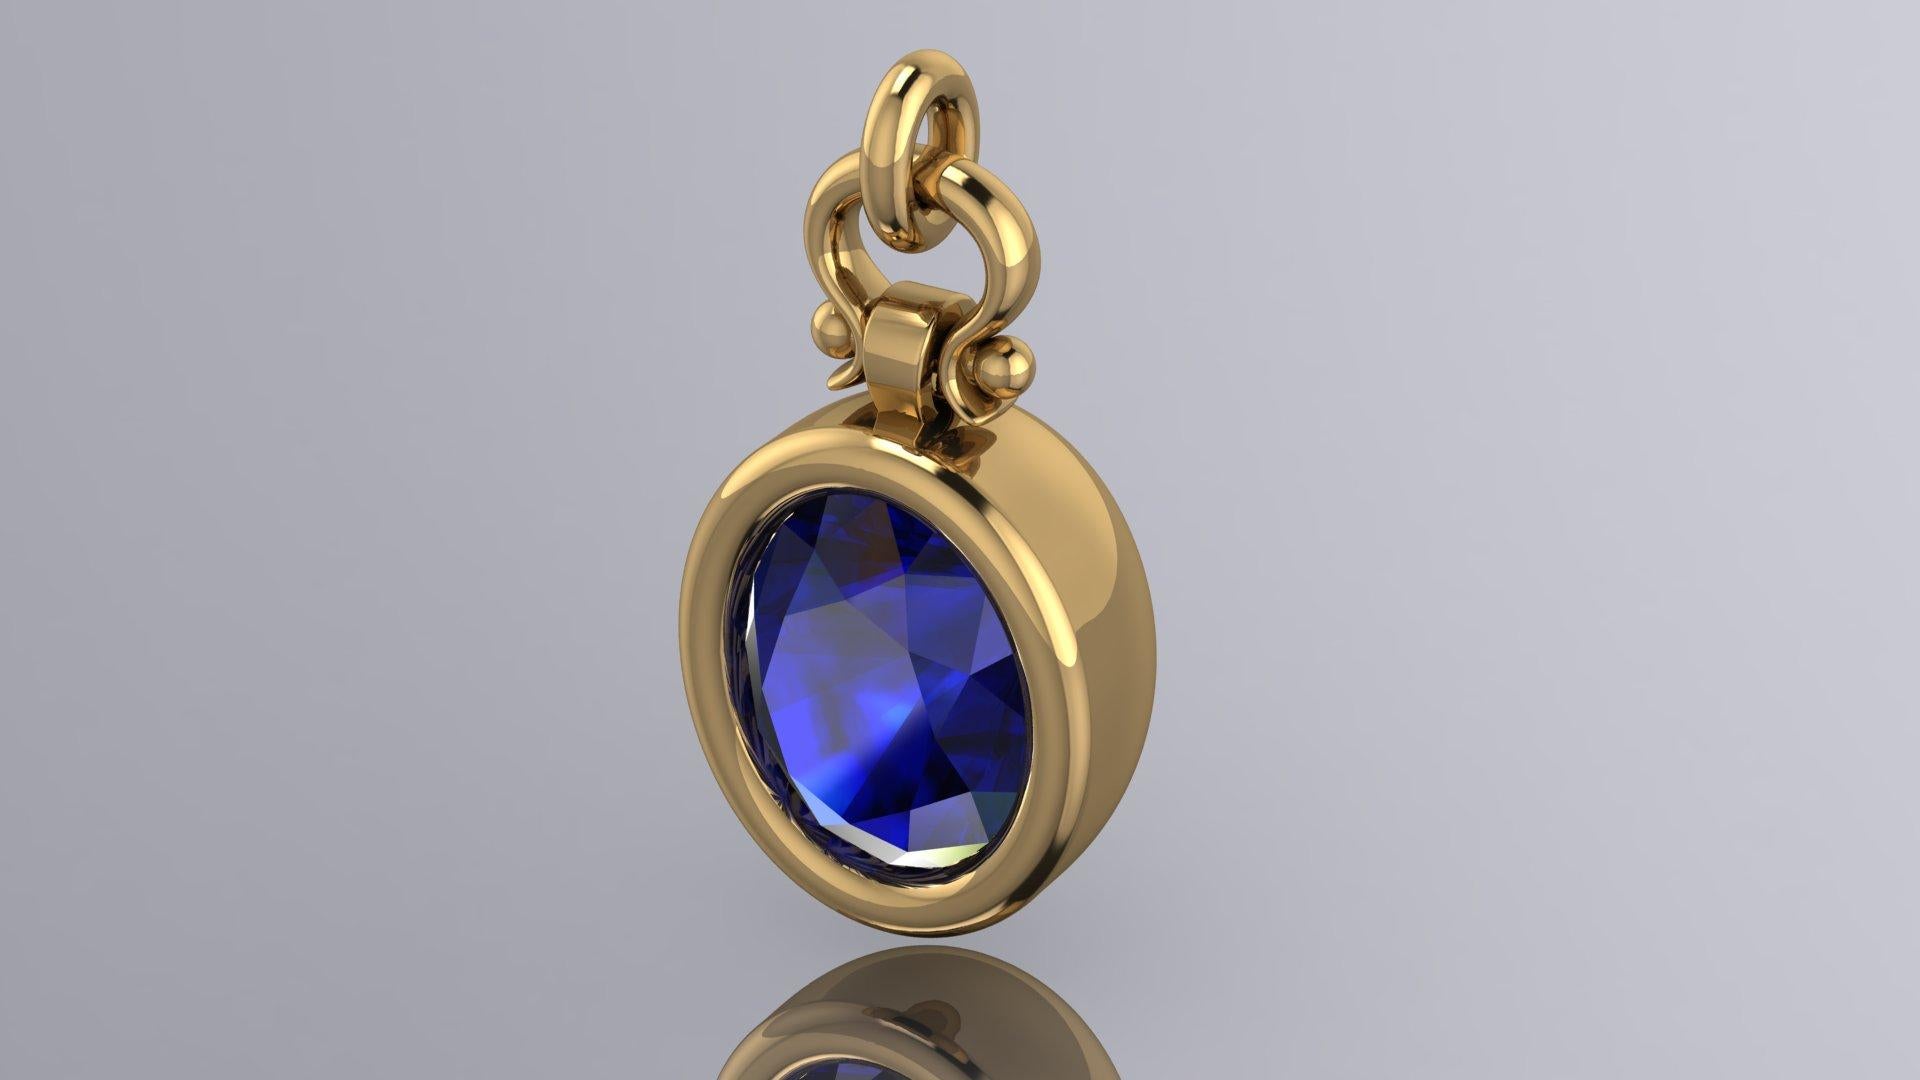 Oval Cut Berberyn Certified 5.04 Carat Oval Blue Sapphire Custom Pendant Necklace in 18k For Sale